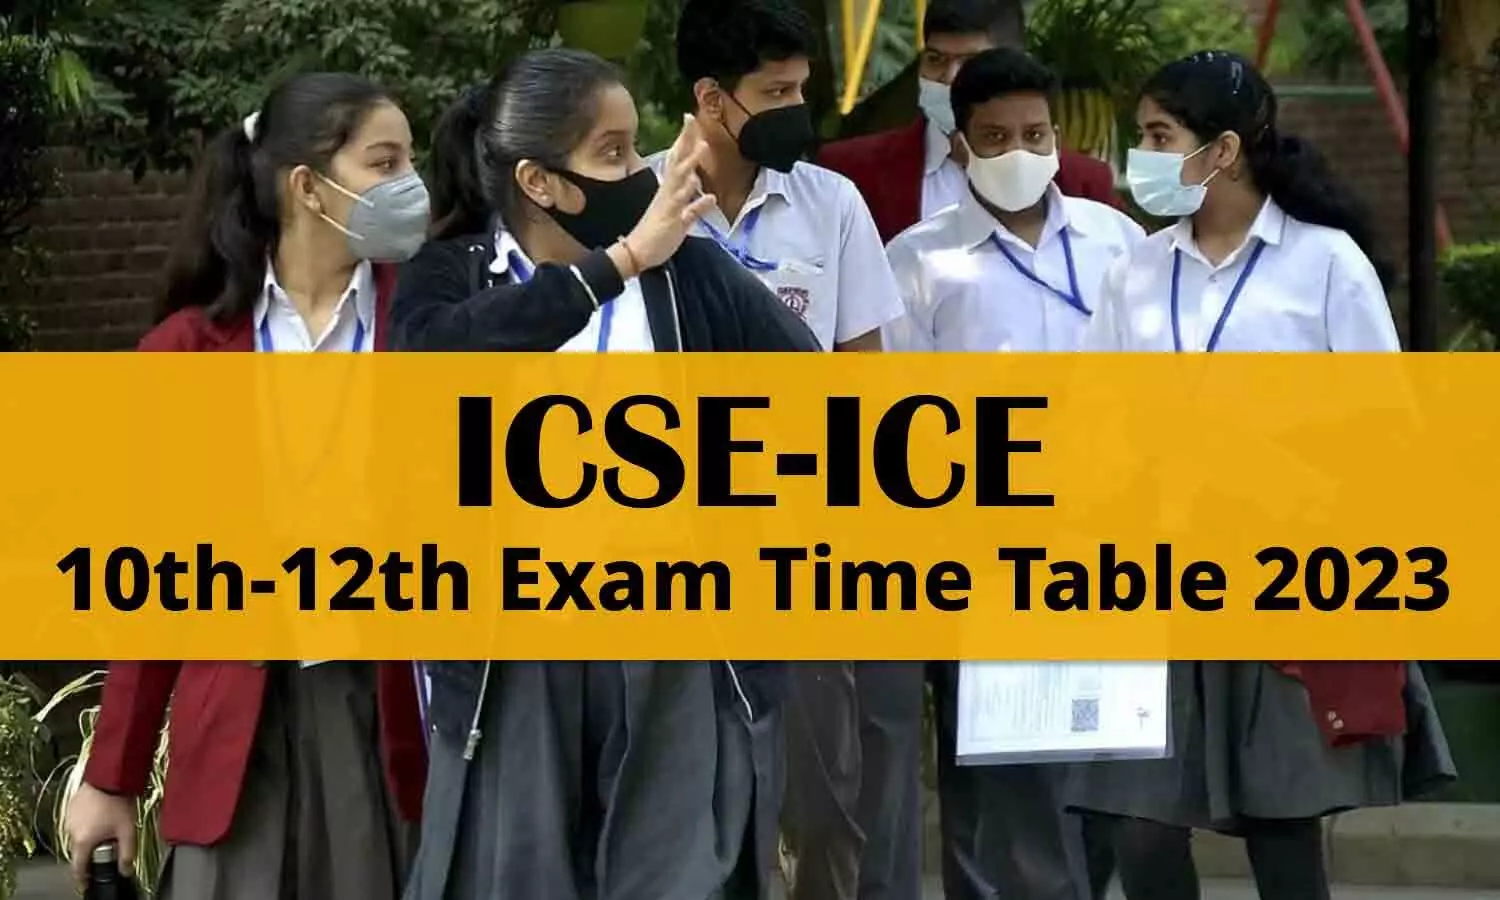 ICSE ICE Exam 10th-12th Time Table 2023: आईसीएसई, आईसीई की 10वीं एवं 12वीं की परीक्षा की समय सारिणी जारी, यहां करें डाउनलोड